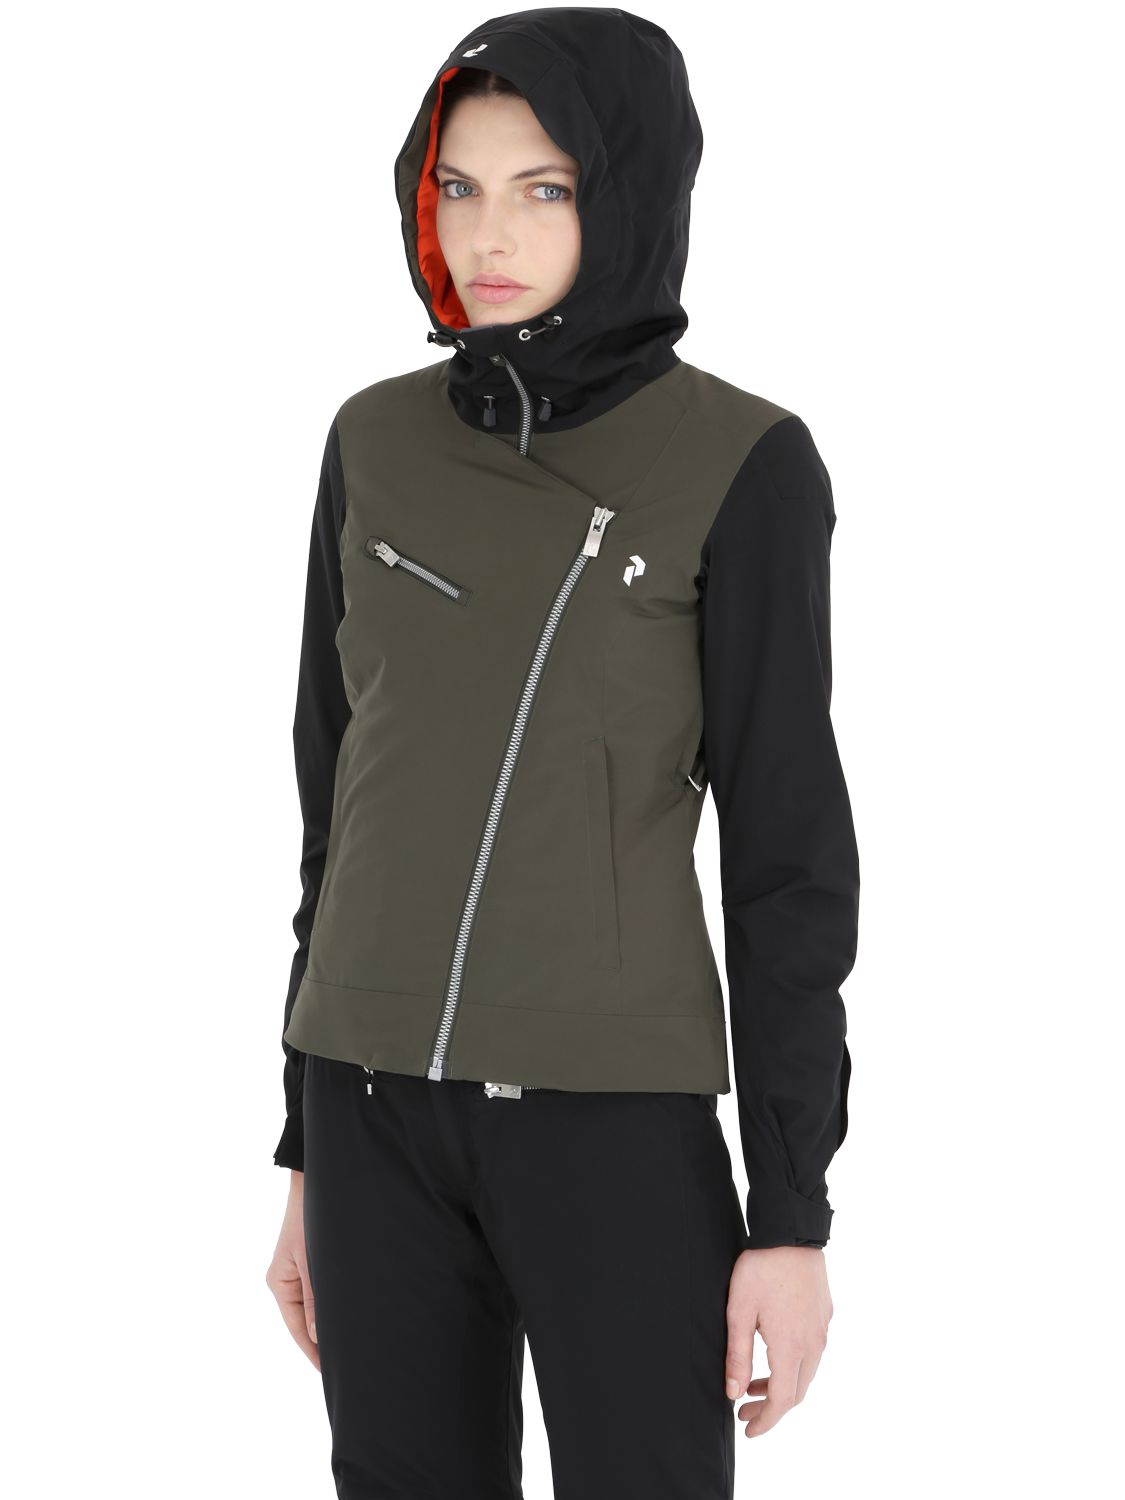 Newest > peak performance army hoodie | Sale OFF - 63%